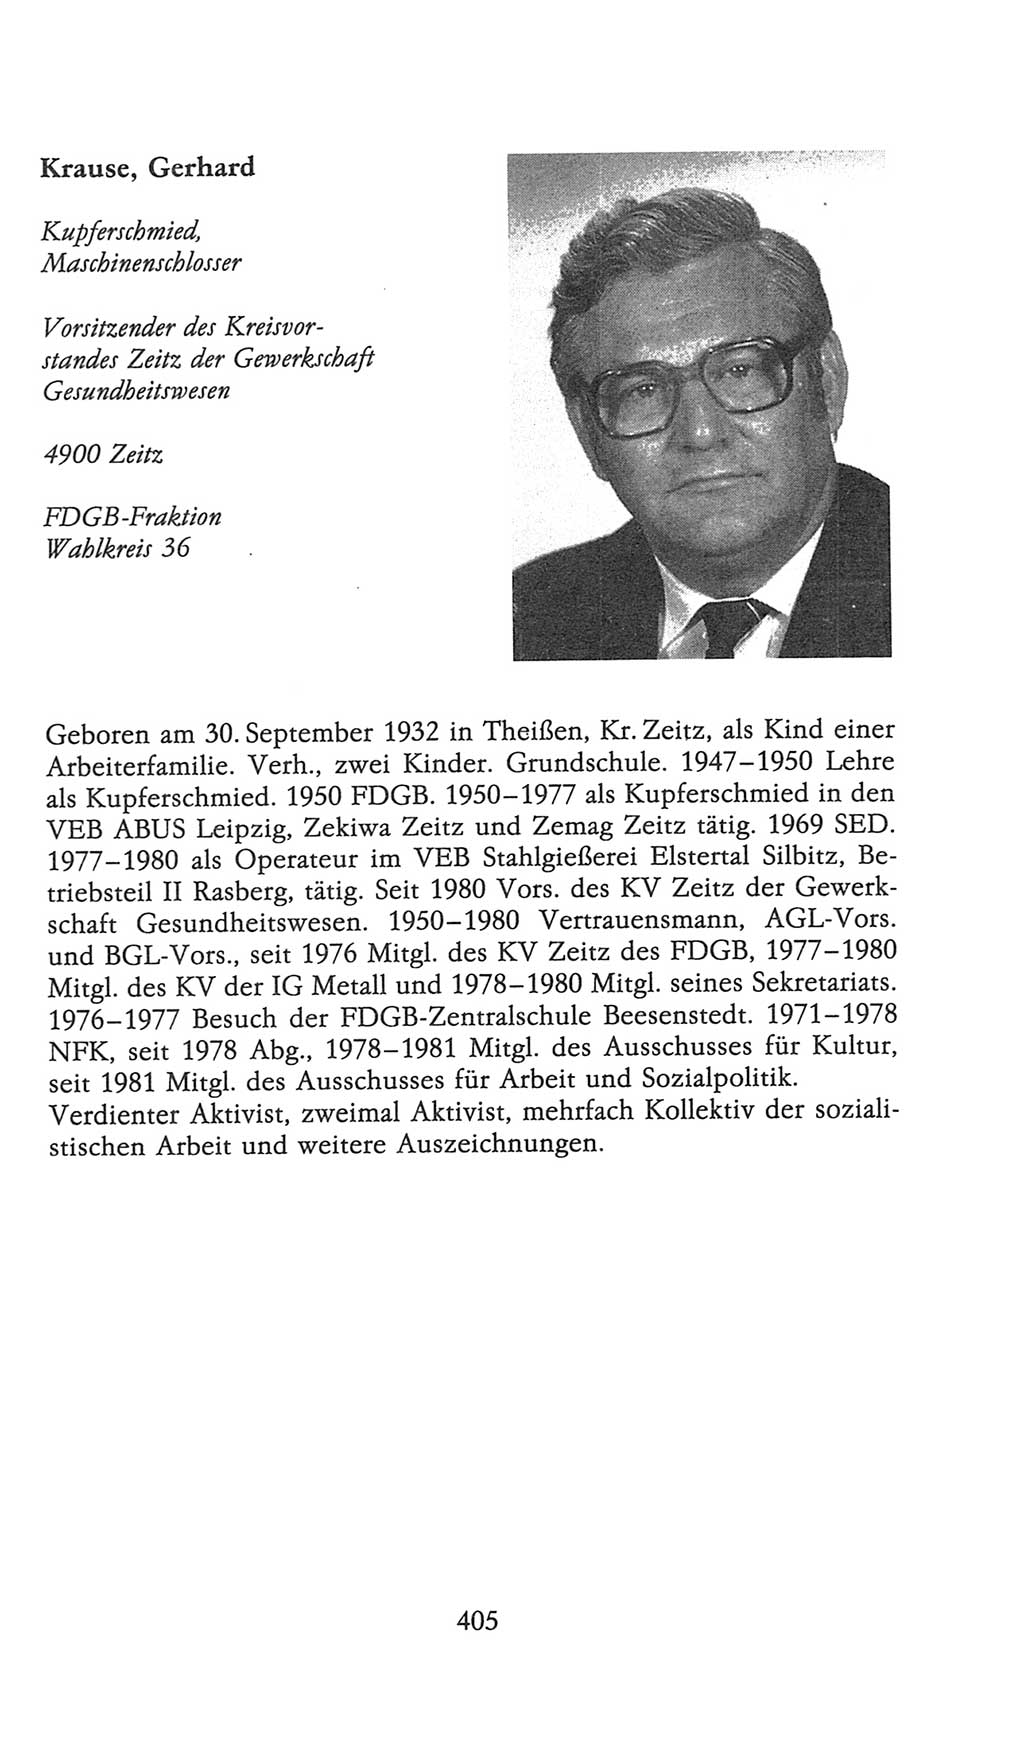 Volkskammer (VK) der Deutschen Demokratischen Republik (DDR), 9. Wahlperiode 1986-1990, Seite 405 (VK. DDR 9. WP. 1986-1990, S. 405)